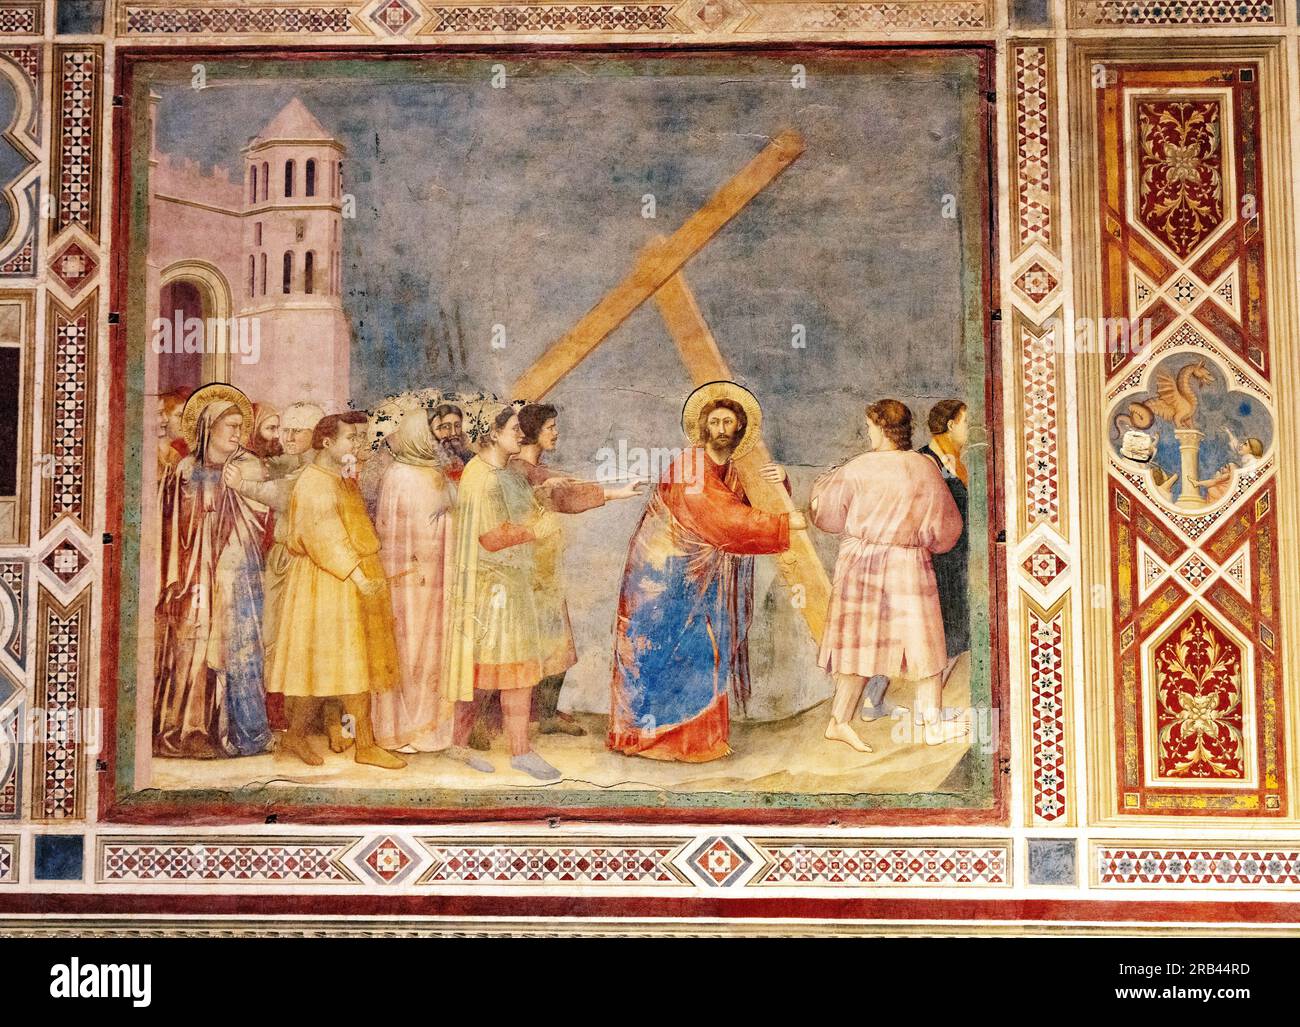 Fresque de Giotto, la chapelle des Scrovegni, Padoue Italie - peintures de la Renaissance italienne des années 1300 de la vie du Christ ; ici portant la Croix. Histoire de l'art. Banque D'Images